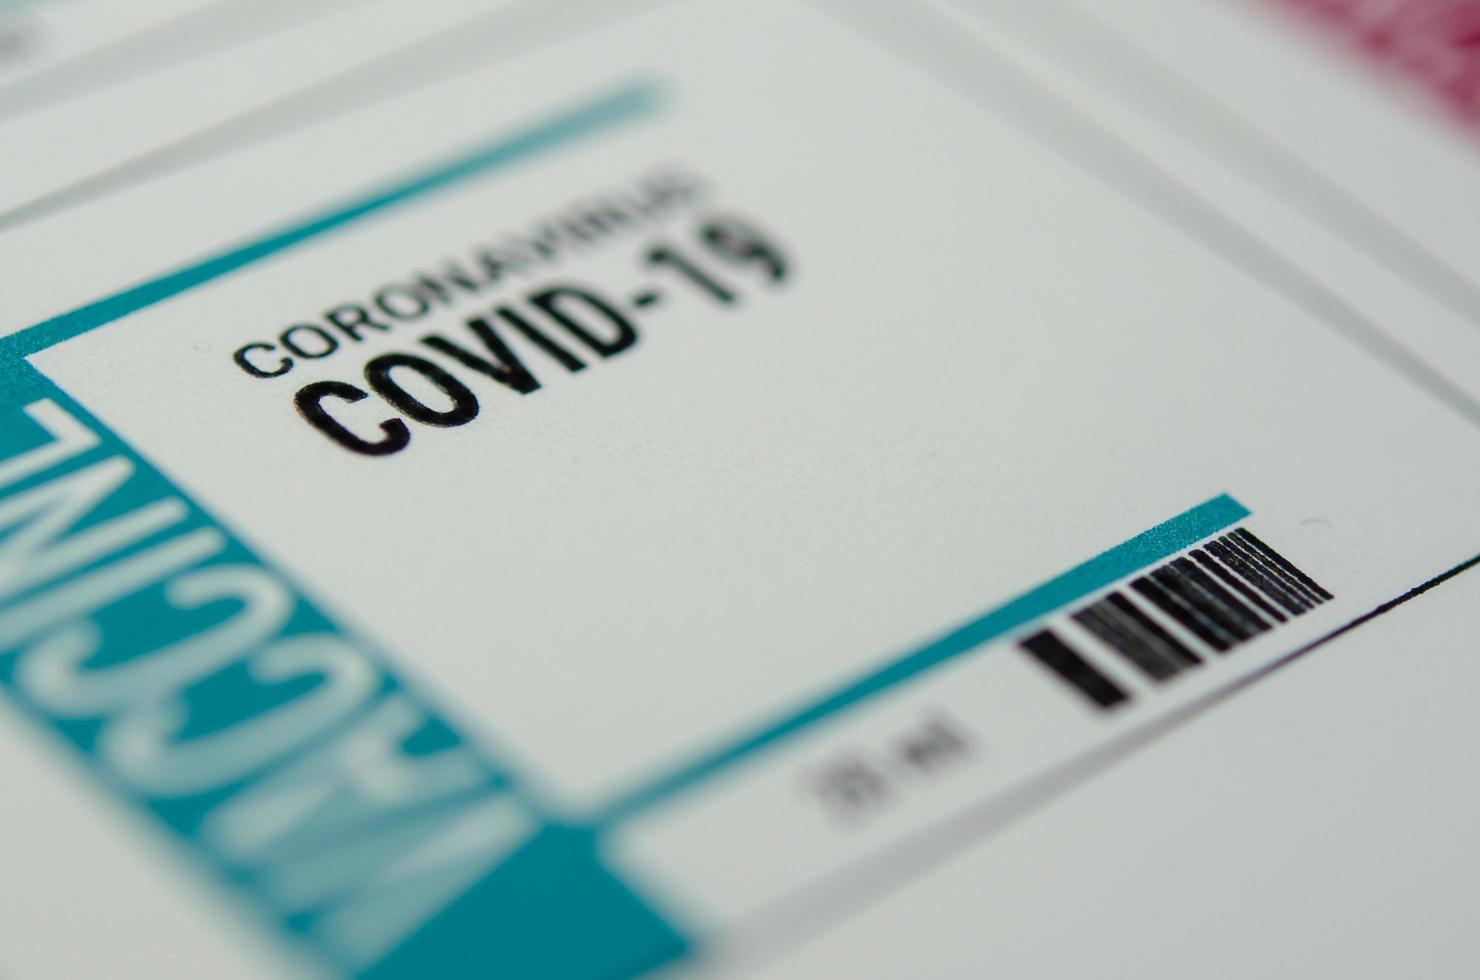 un'etichetta del vaccino contro il coronavirus per covid-19 foto